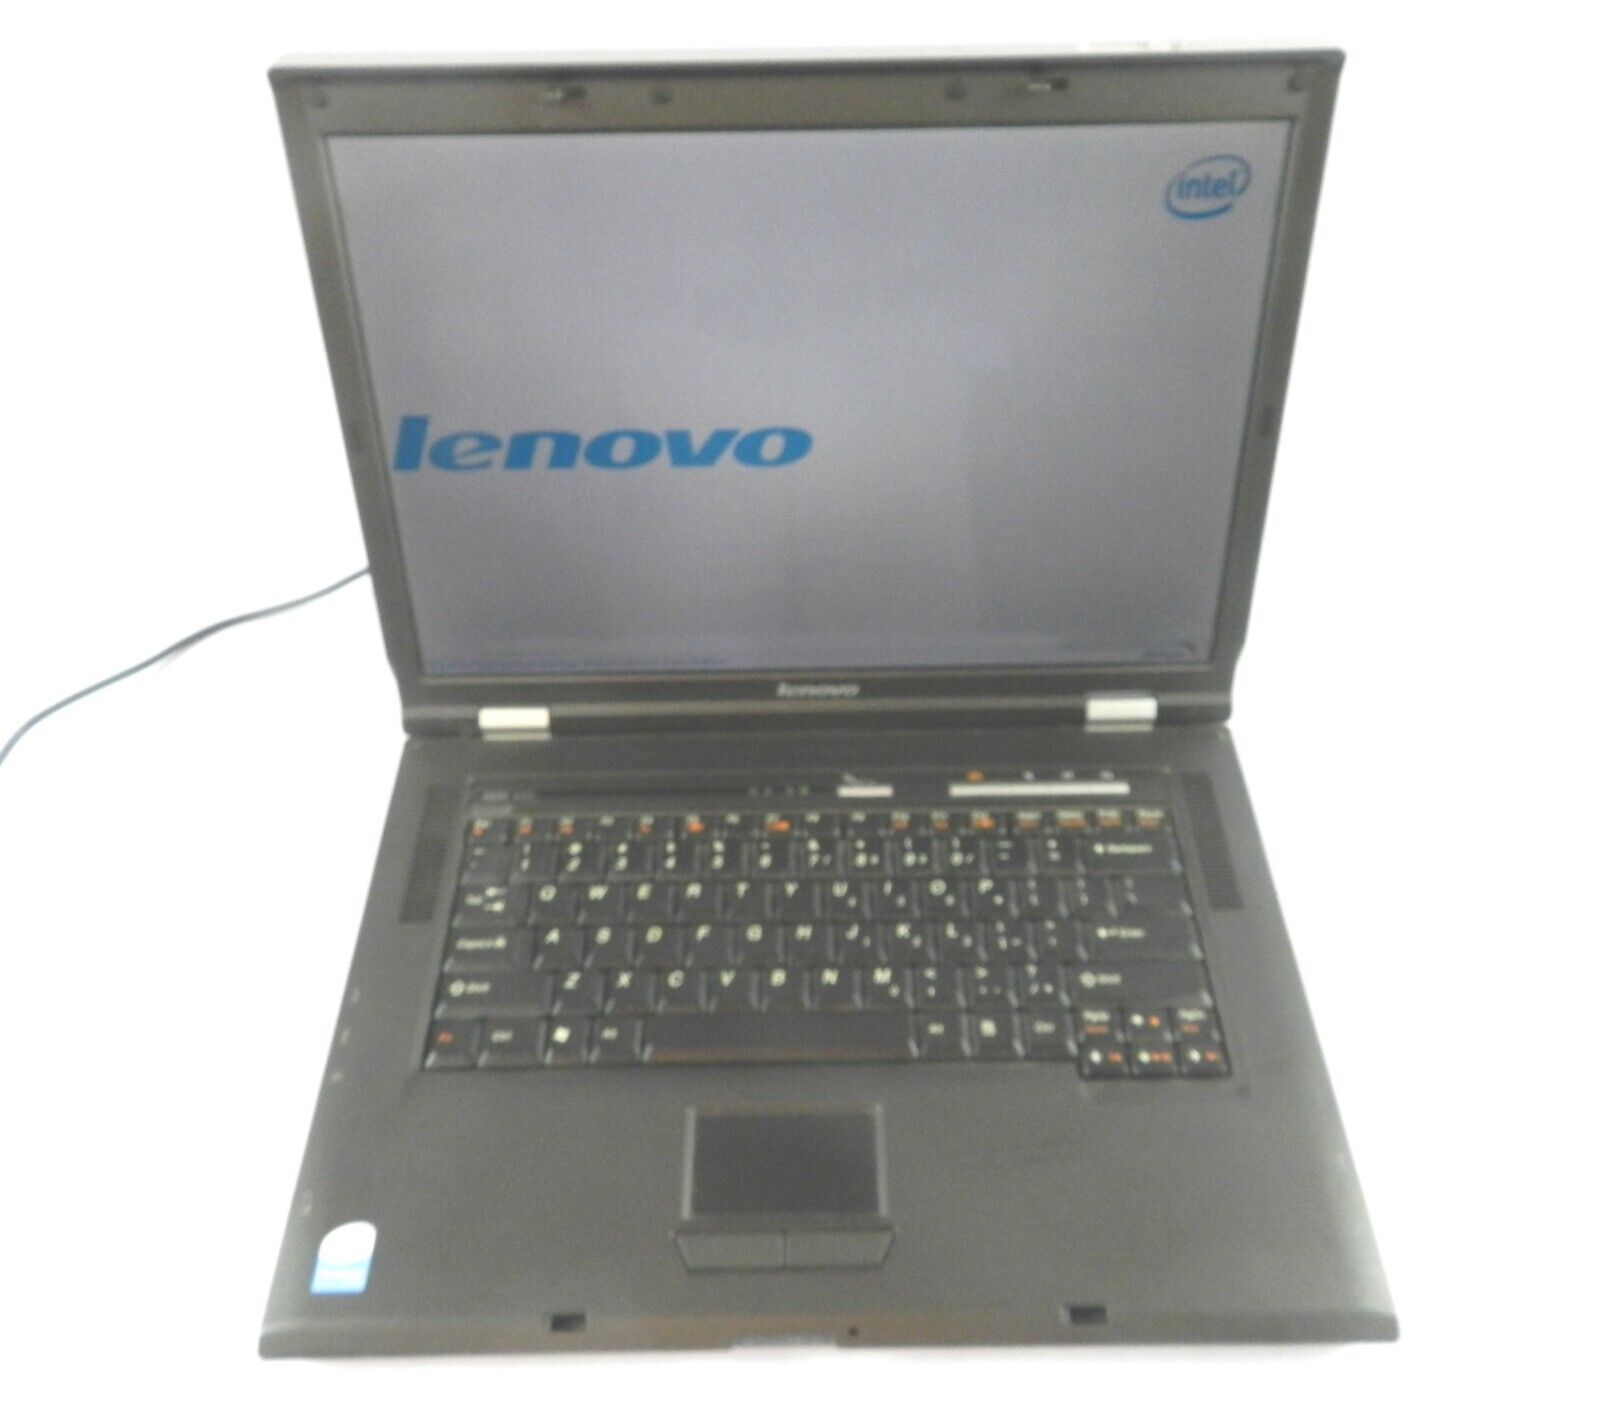 Lenovo model 0768 Laptop 1.6 gHz No OS Clean Detailed Photos